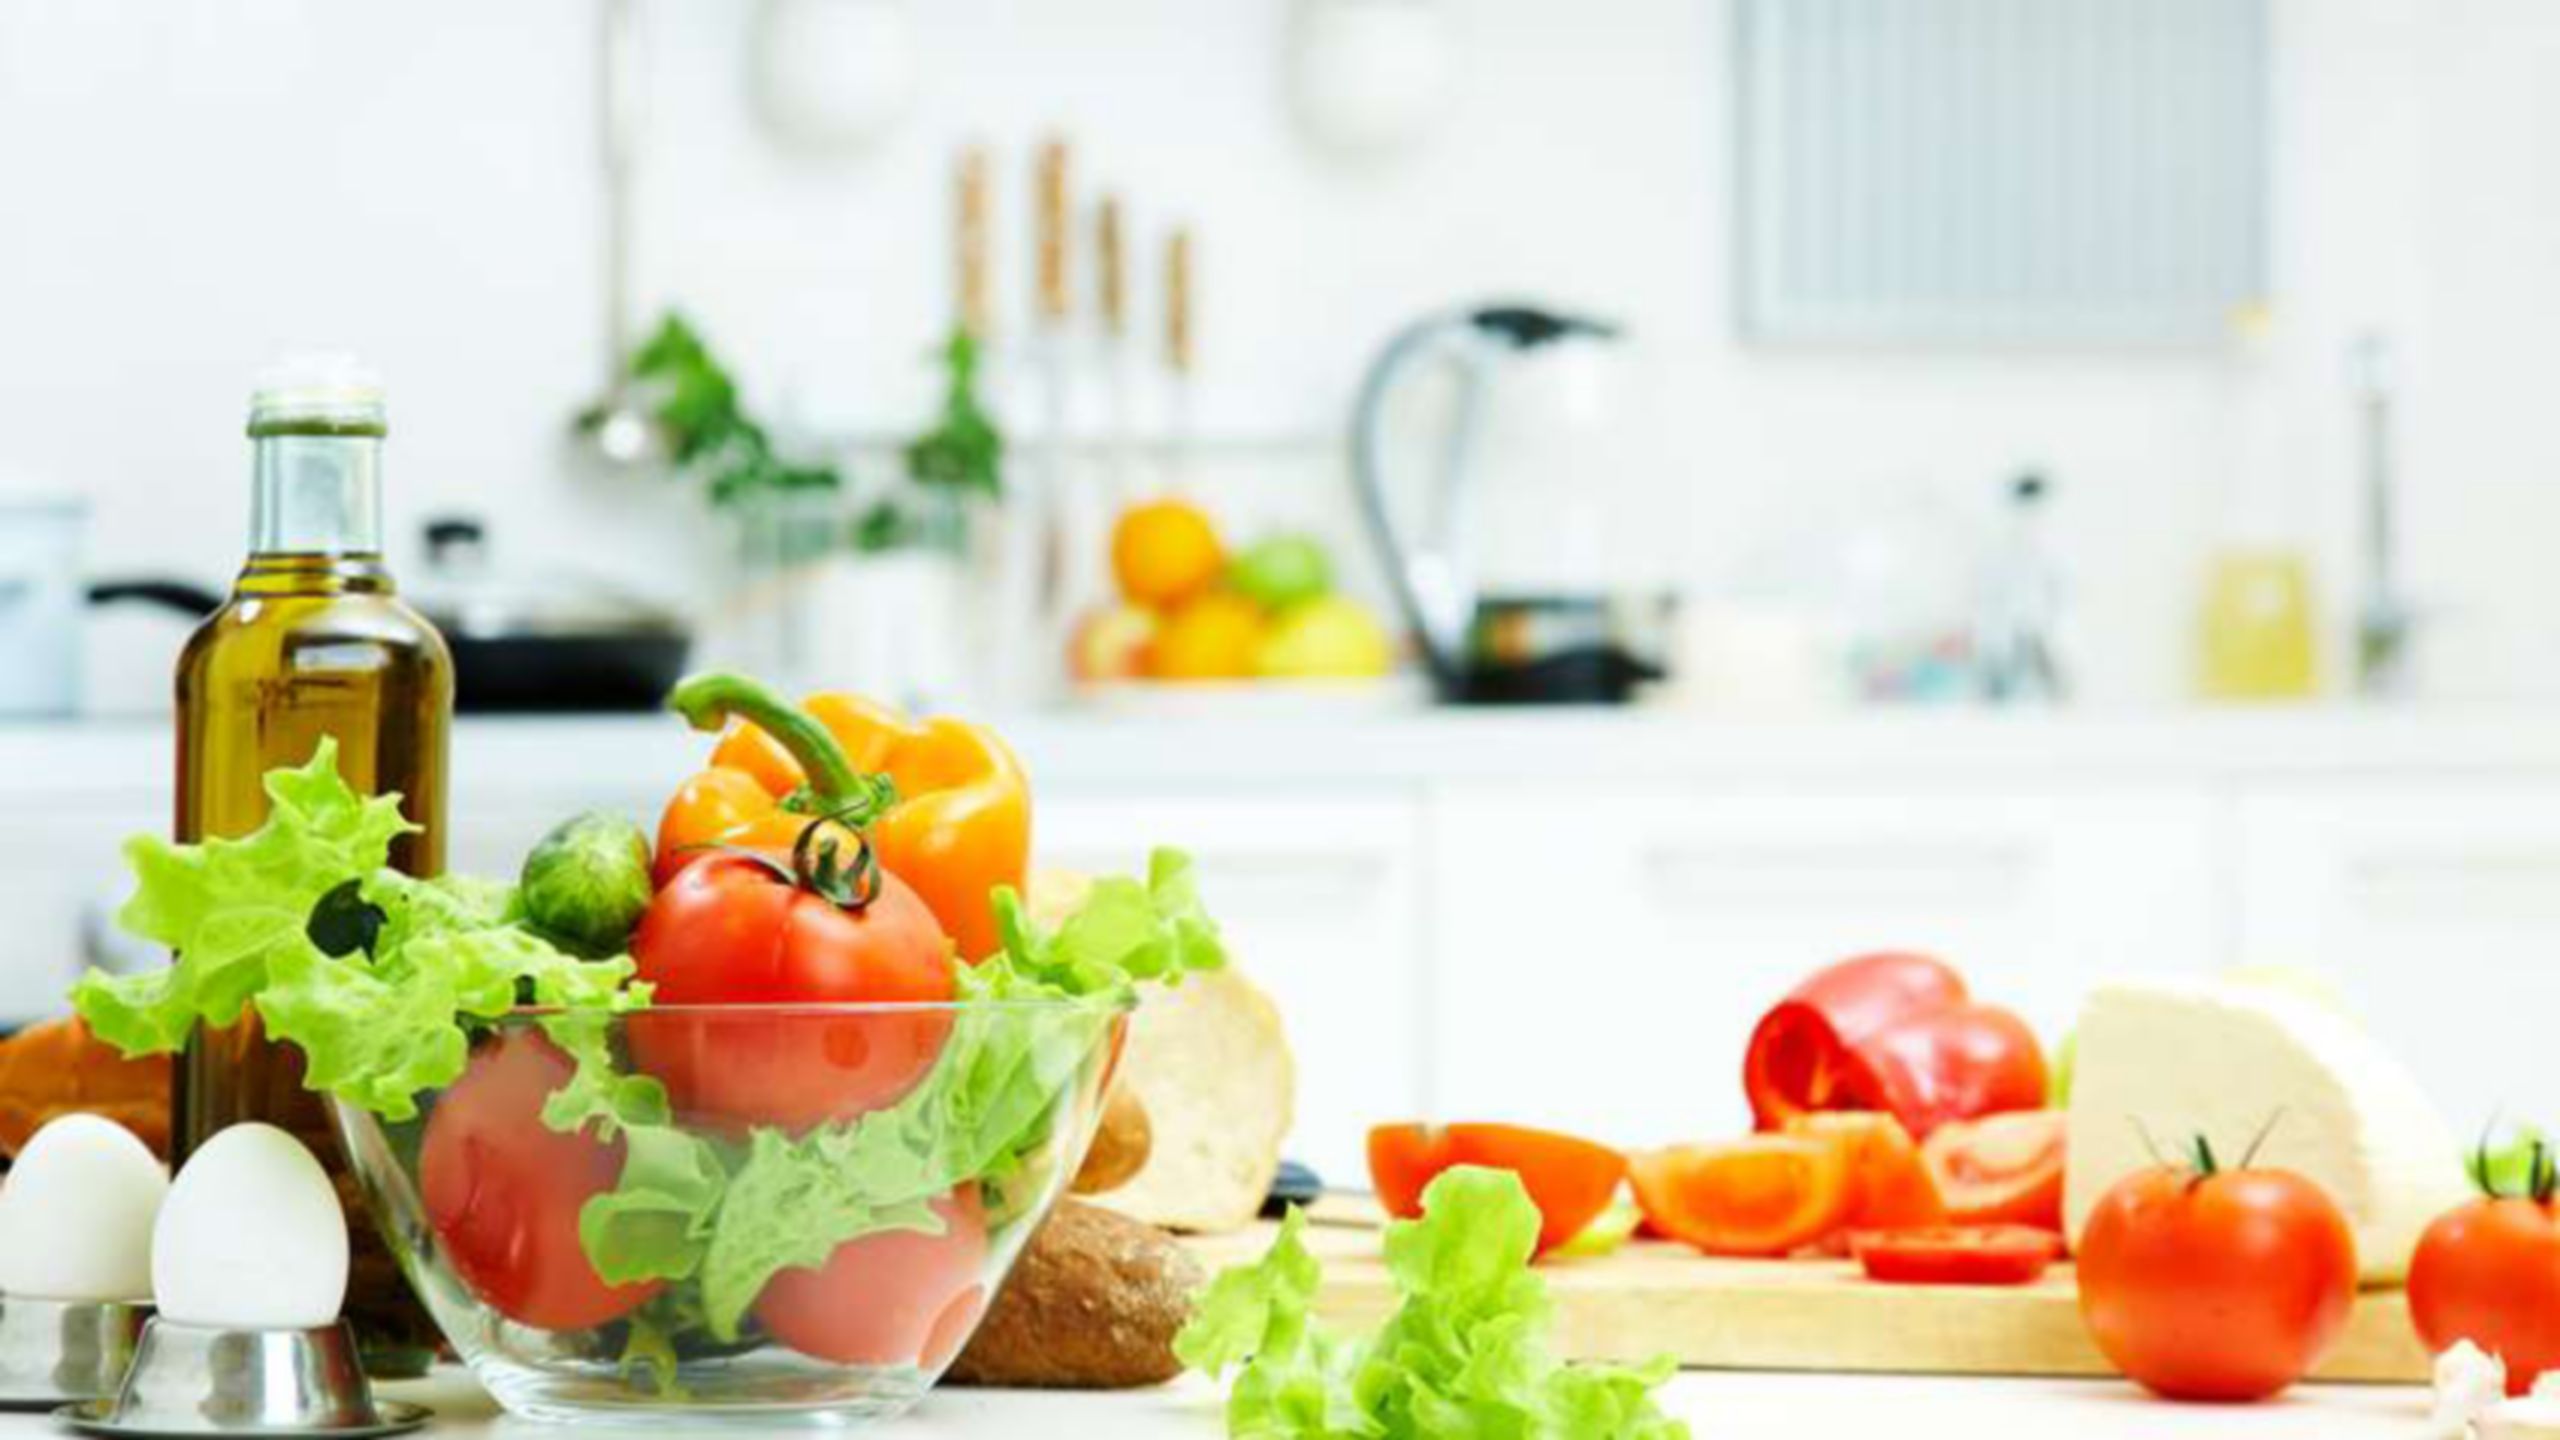 製作沙拉的配料包括廚房檯面上的蕃茄、生菜和雞蛋